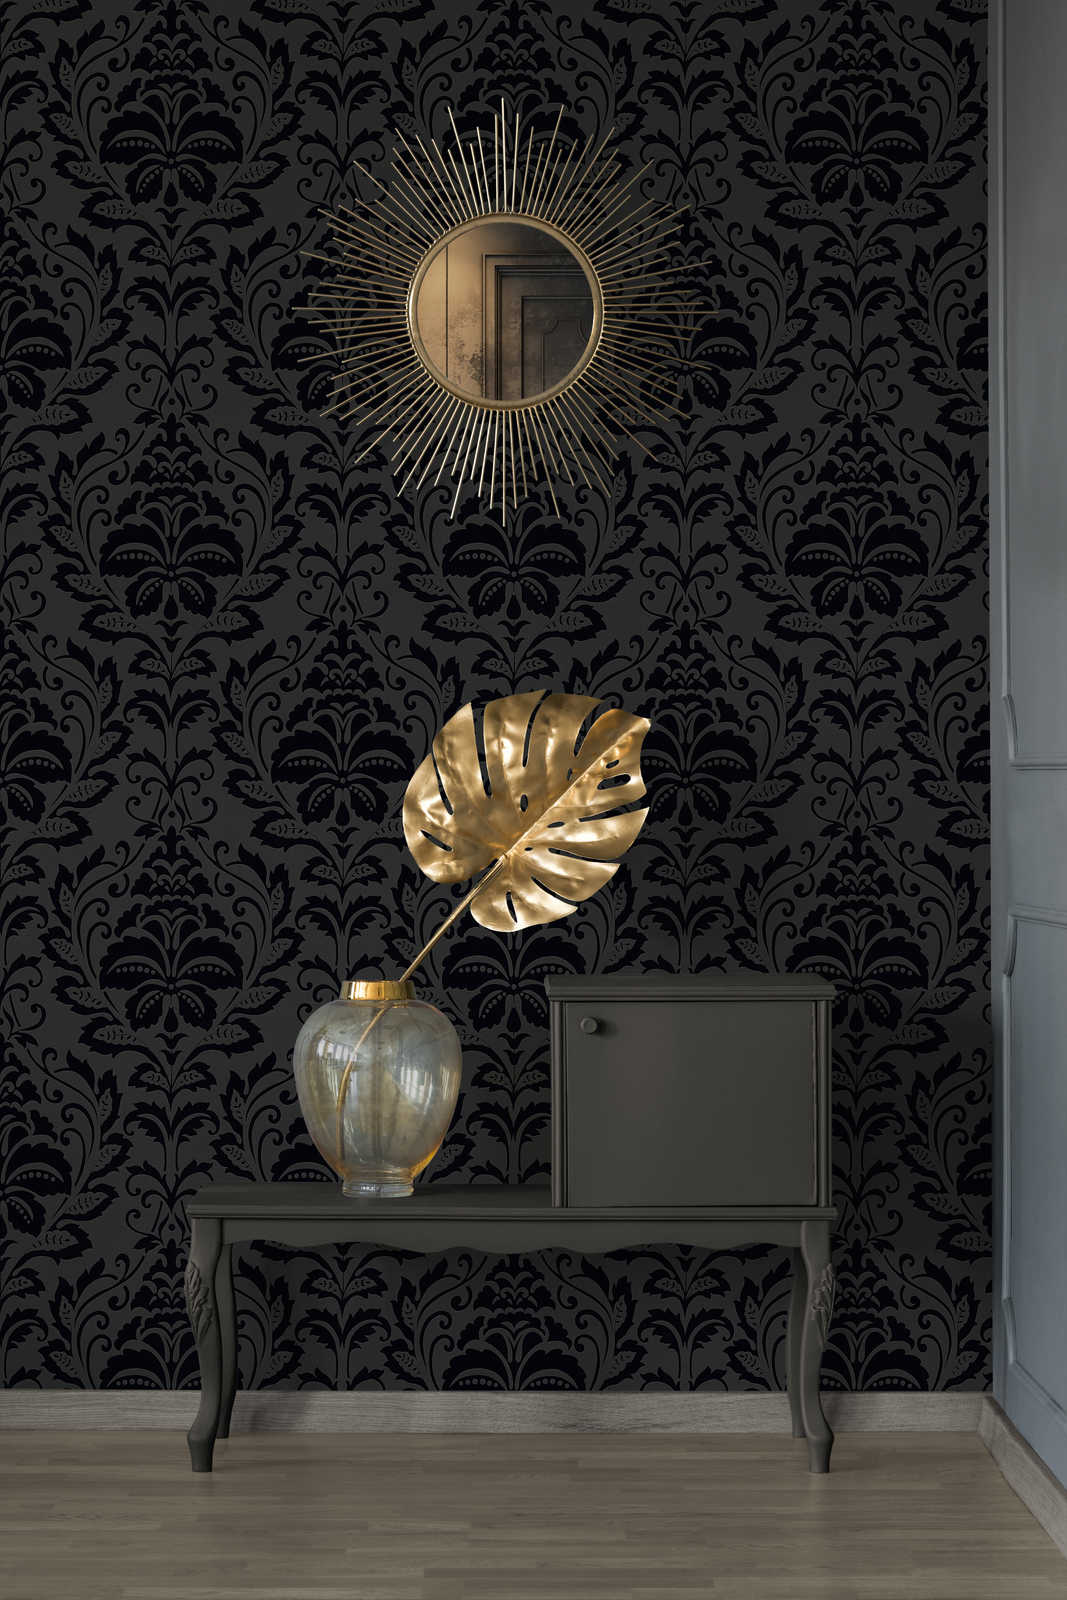             Papier peint ornemental design floral, contraste mat/brillant - noir
        